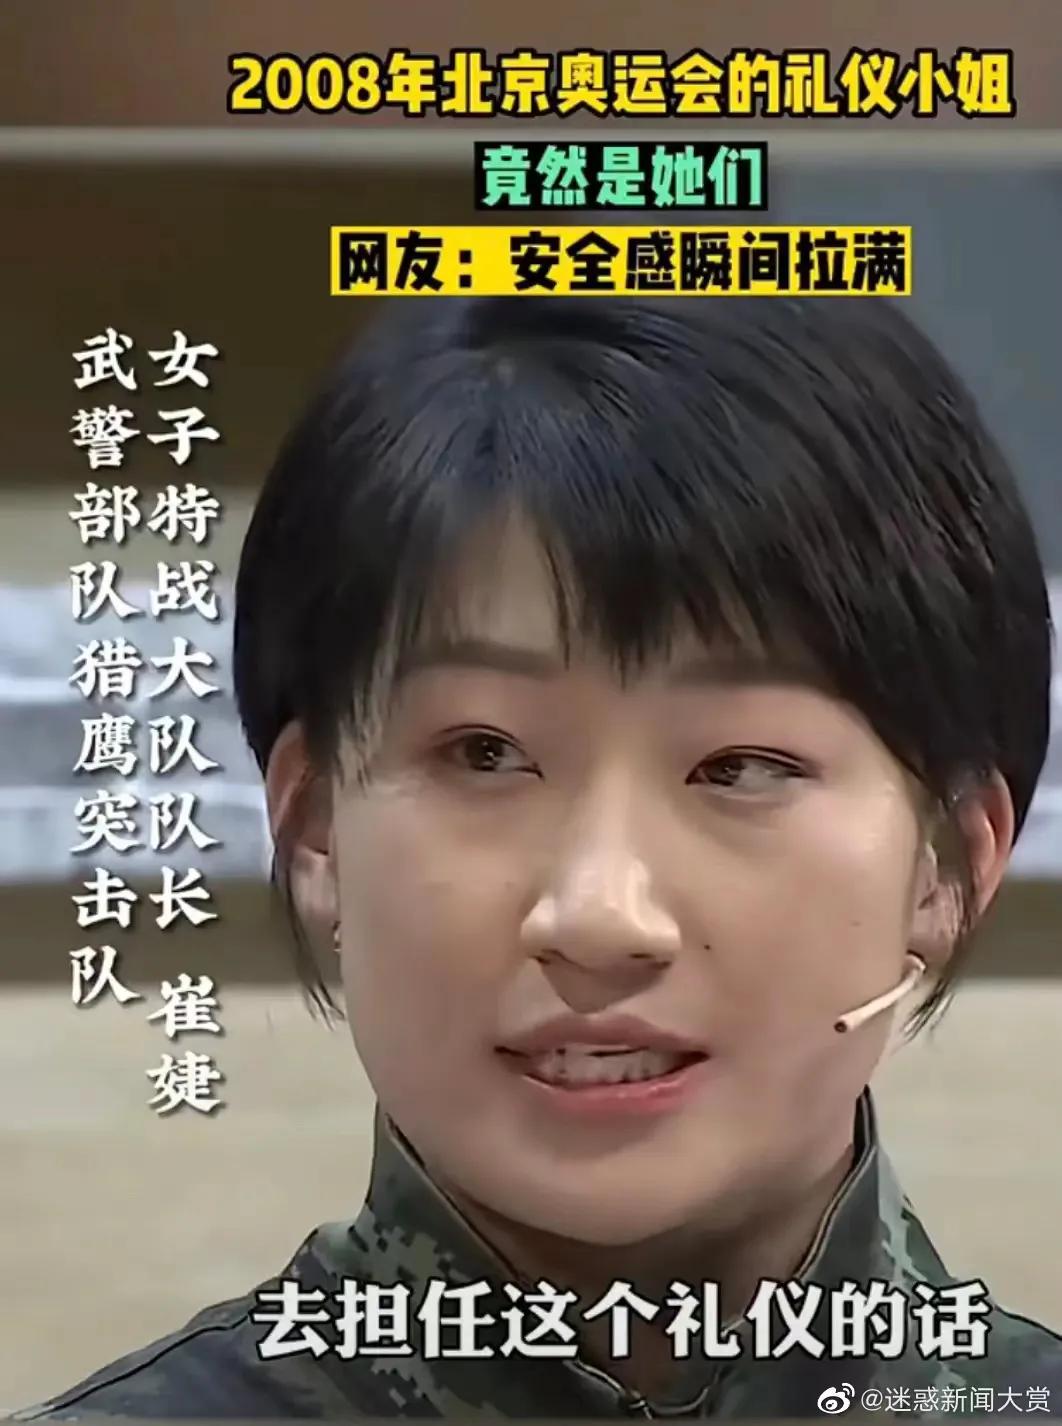 2008年北京奥运会的礼仪小姐，您一定猜不到是谁？